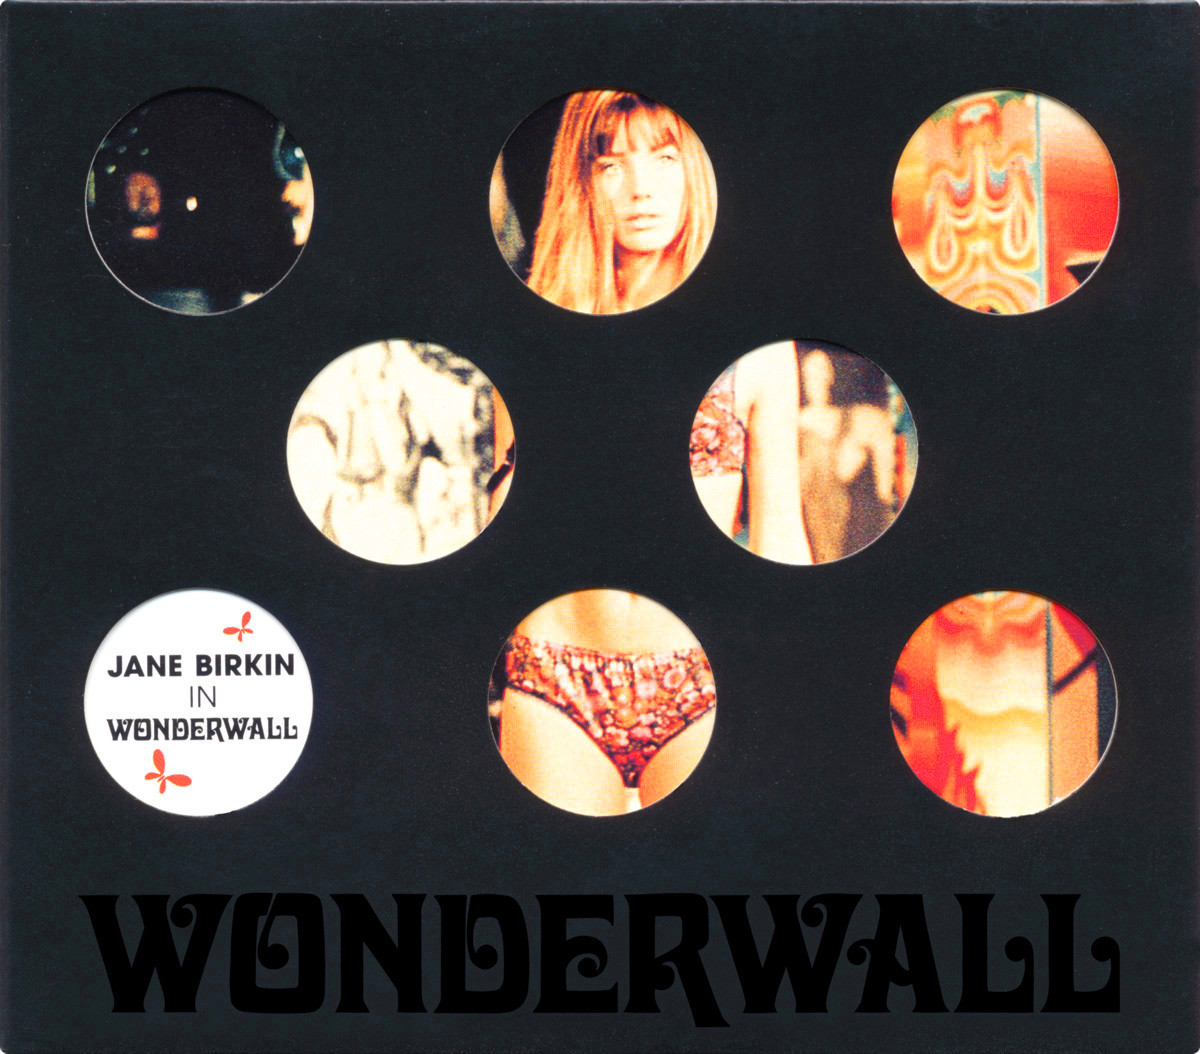 Jane Birkin in “Woderwall”